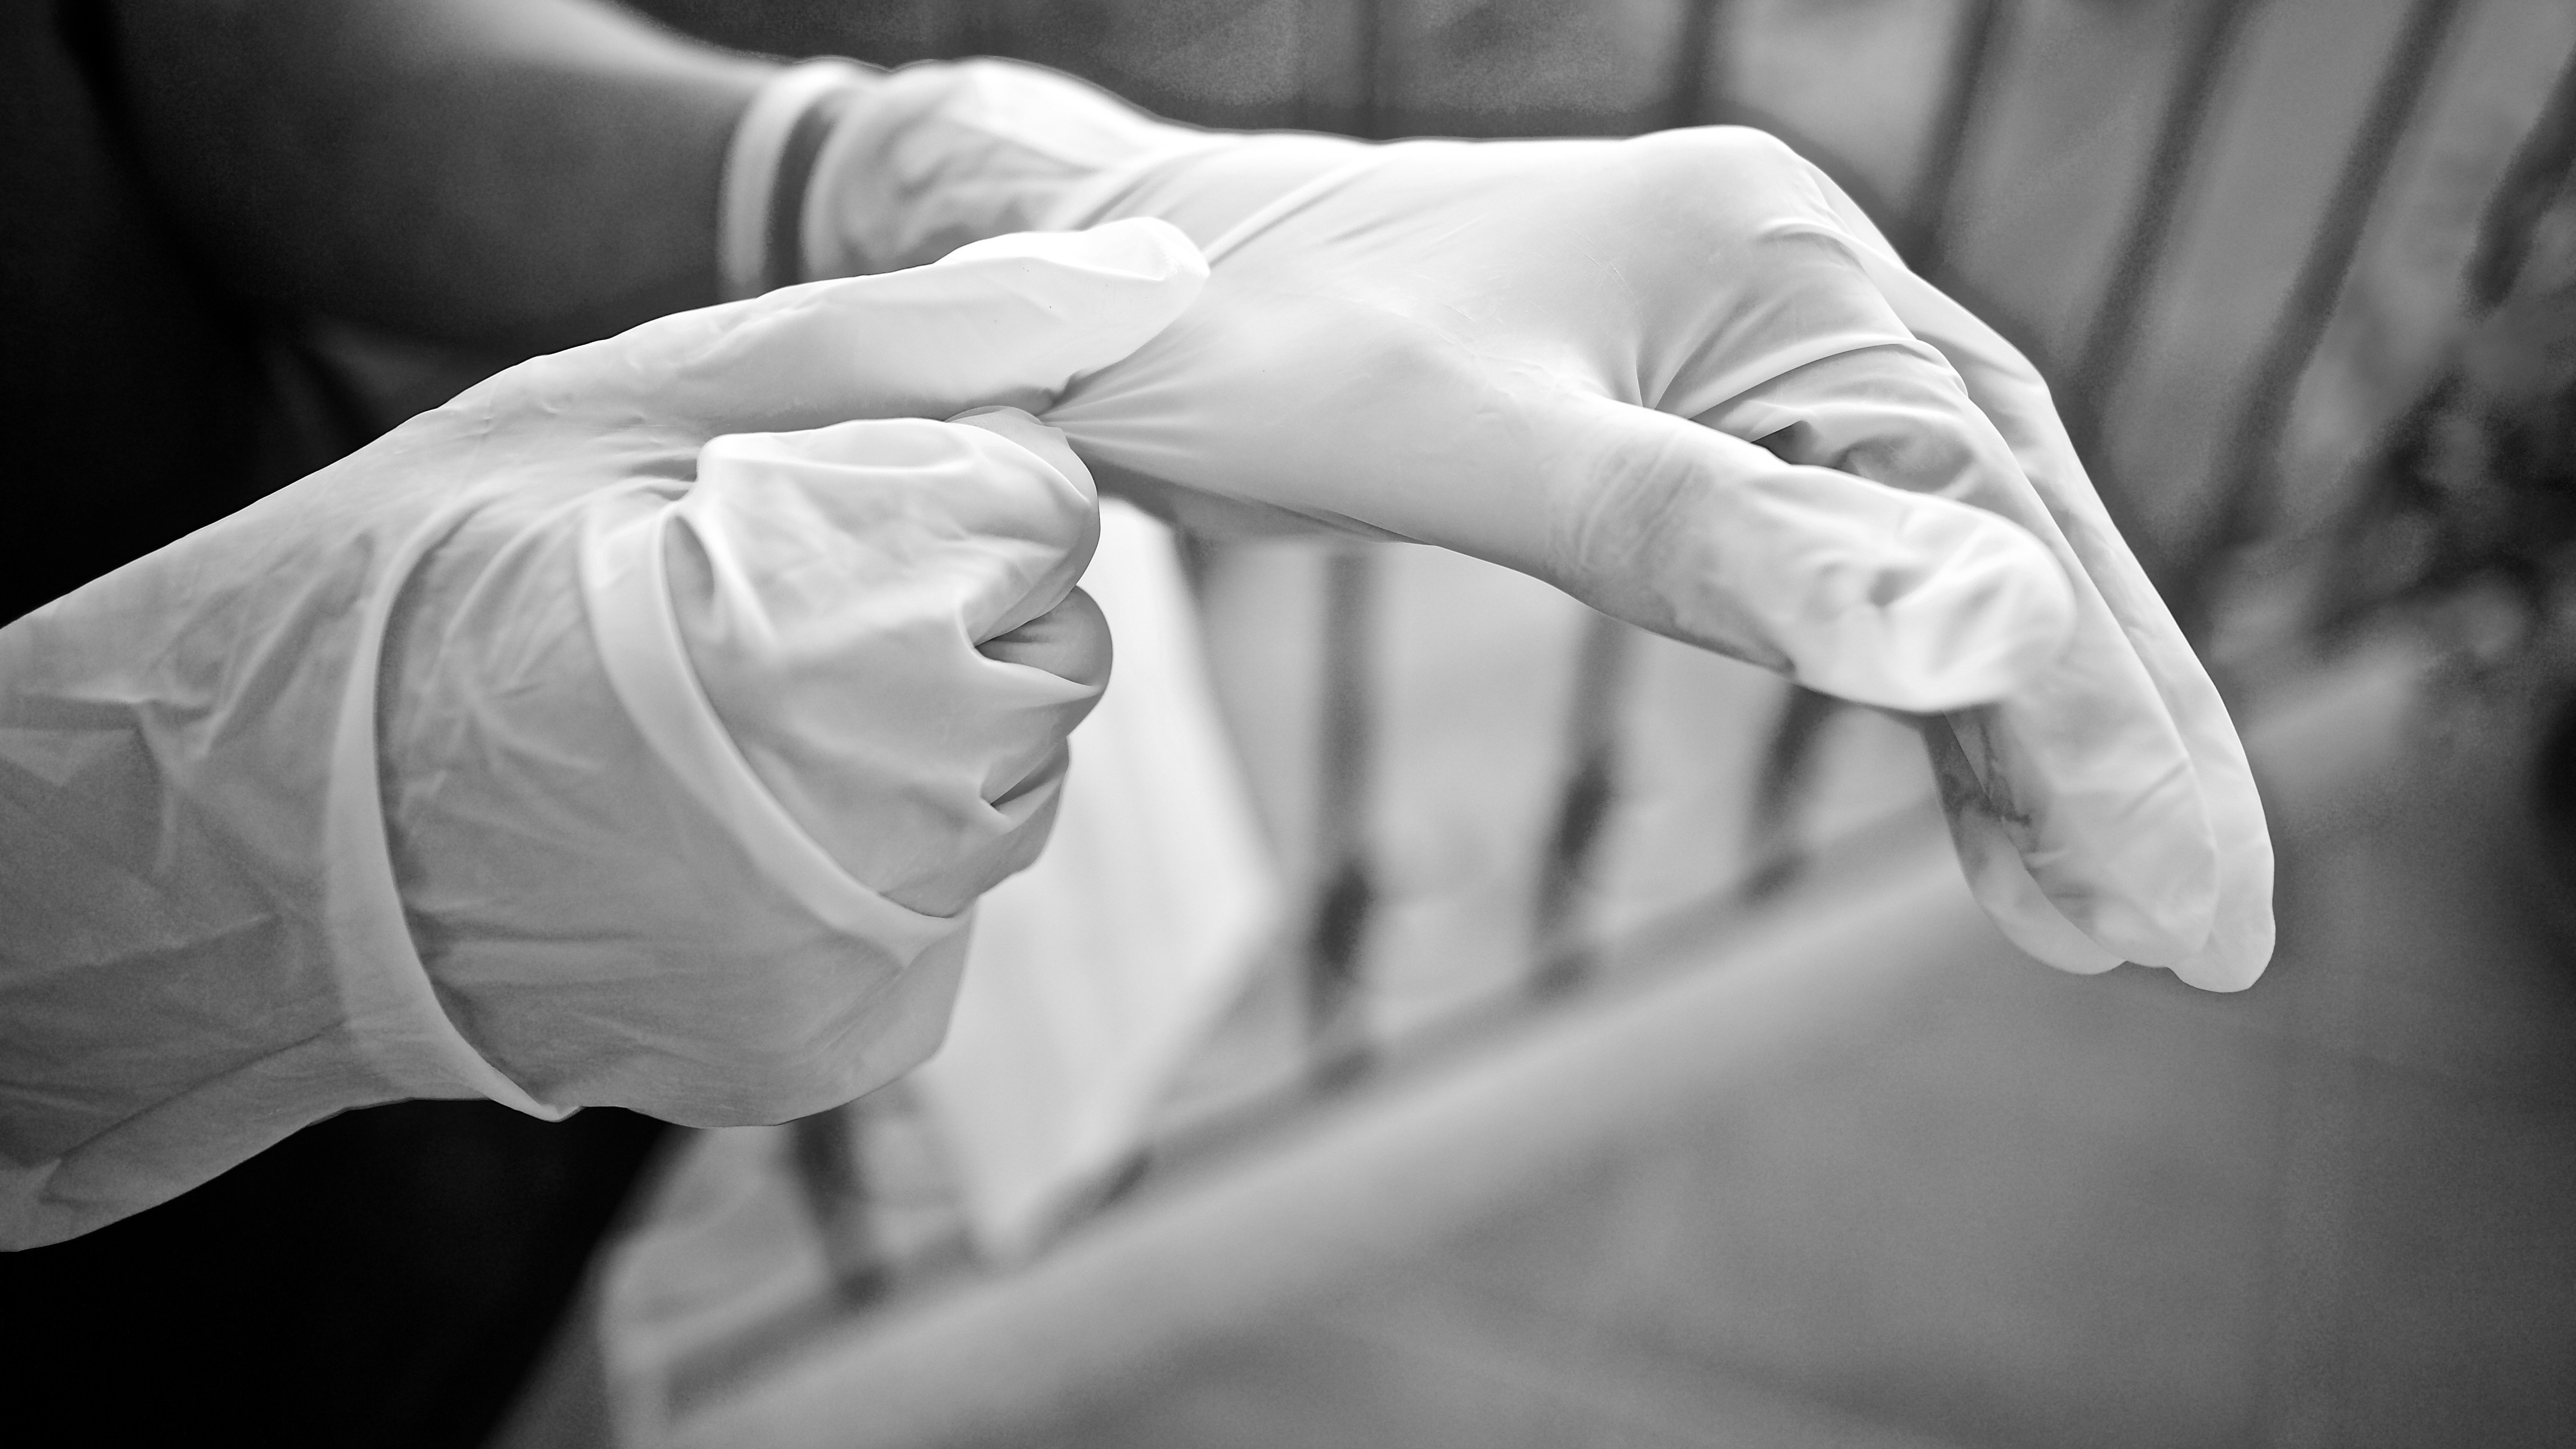 Доктор медицинских наук: тканевые перчатки подойдут для профилактики COVID-19